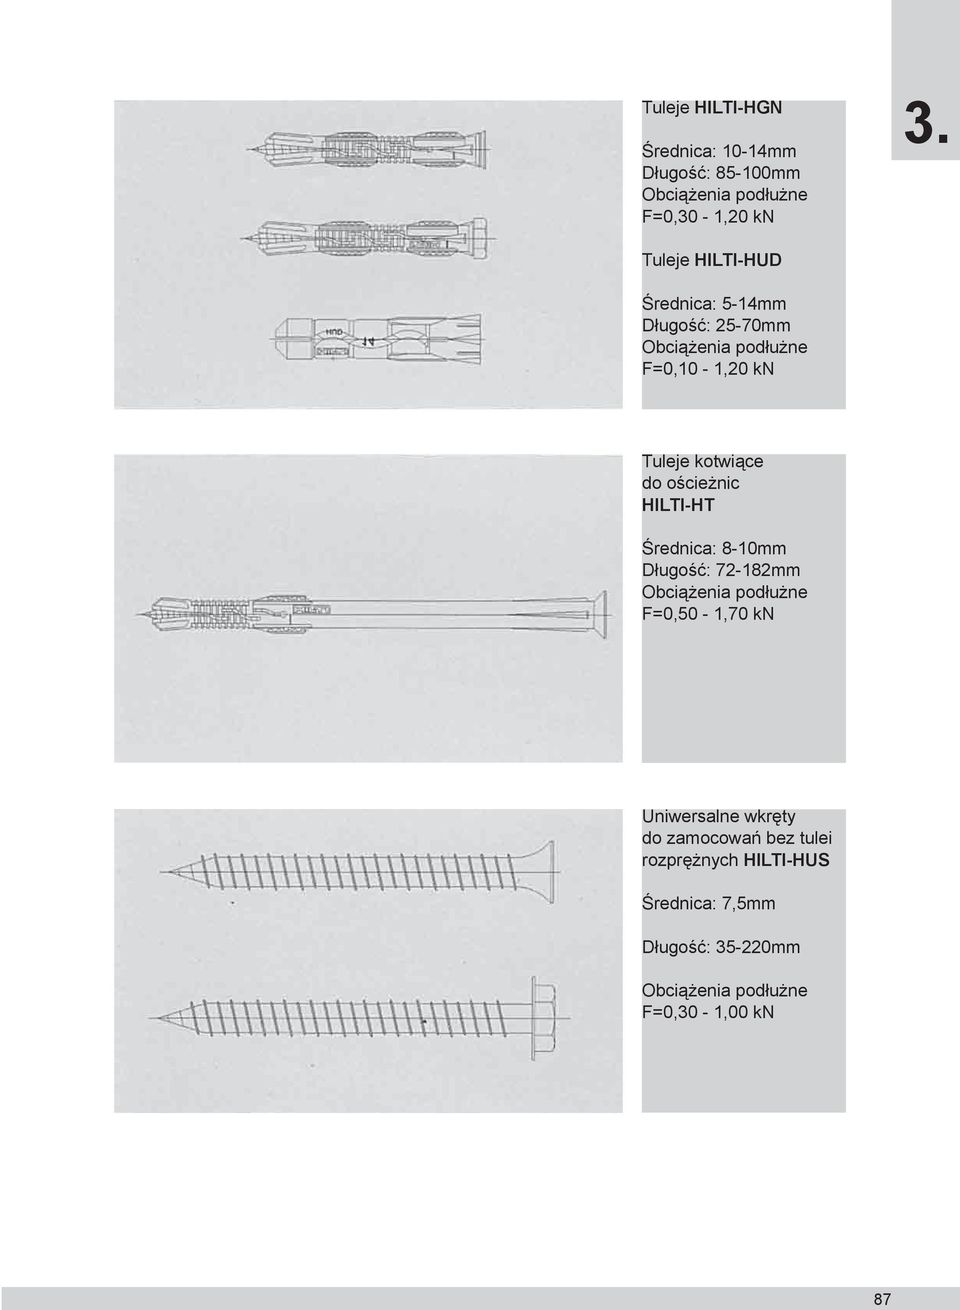 ościeżnic HILTI-HT Średnica: 8-10mm Długość: 72-182mm Obciążenia podłużne F=0,50-1,70 kn Uniwersalne